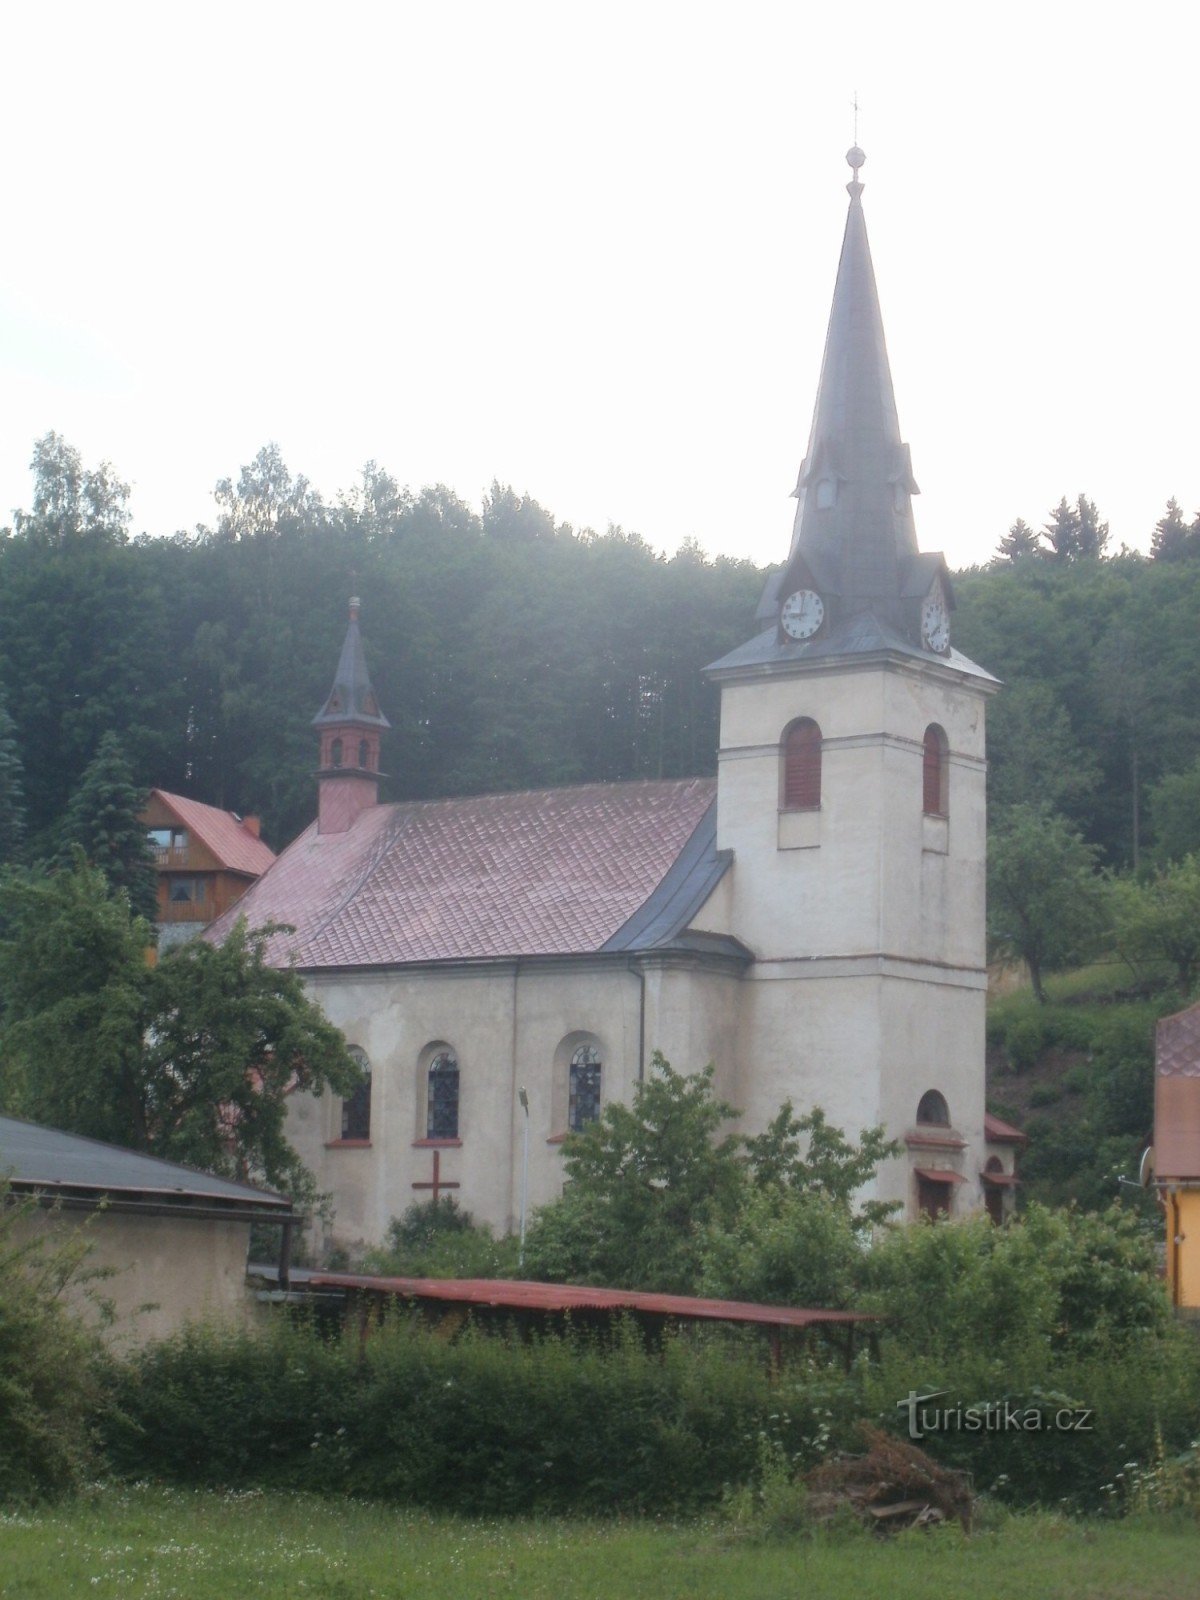 Svoboda nad Úpou - église de St. Jan Nepomucký